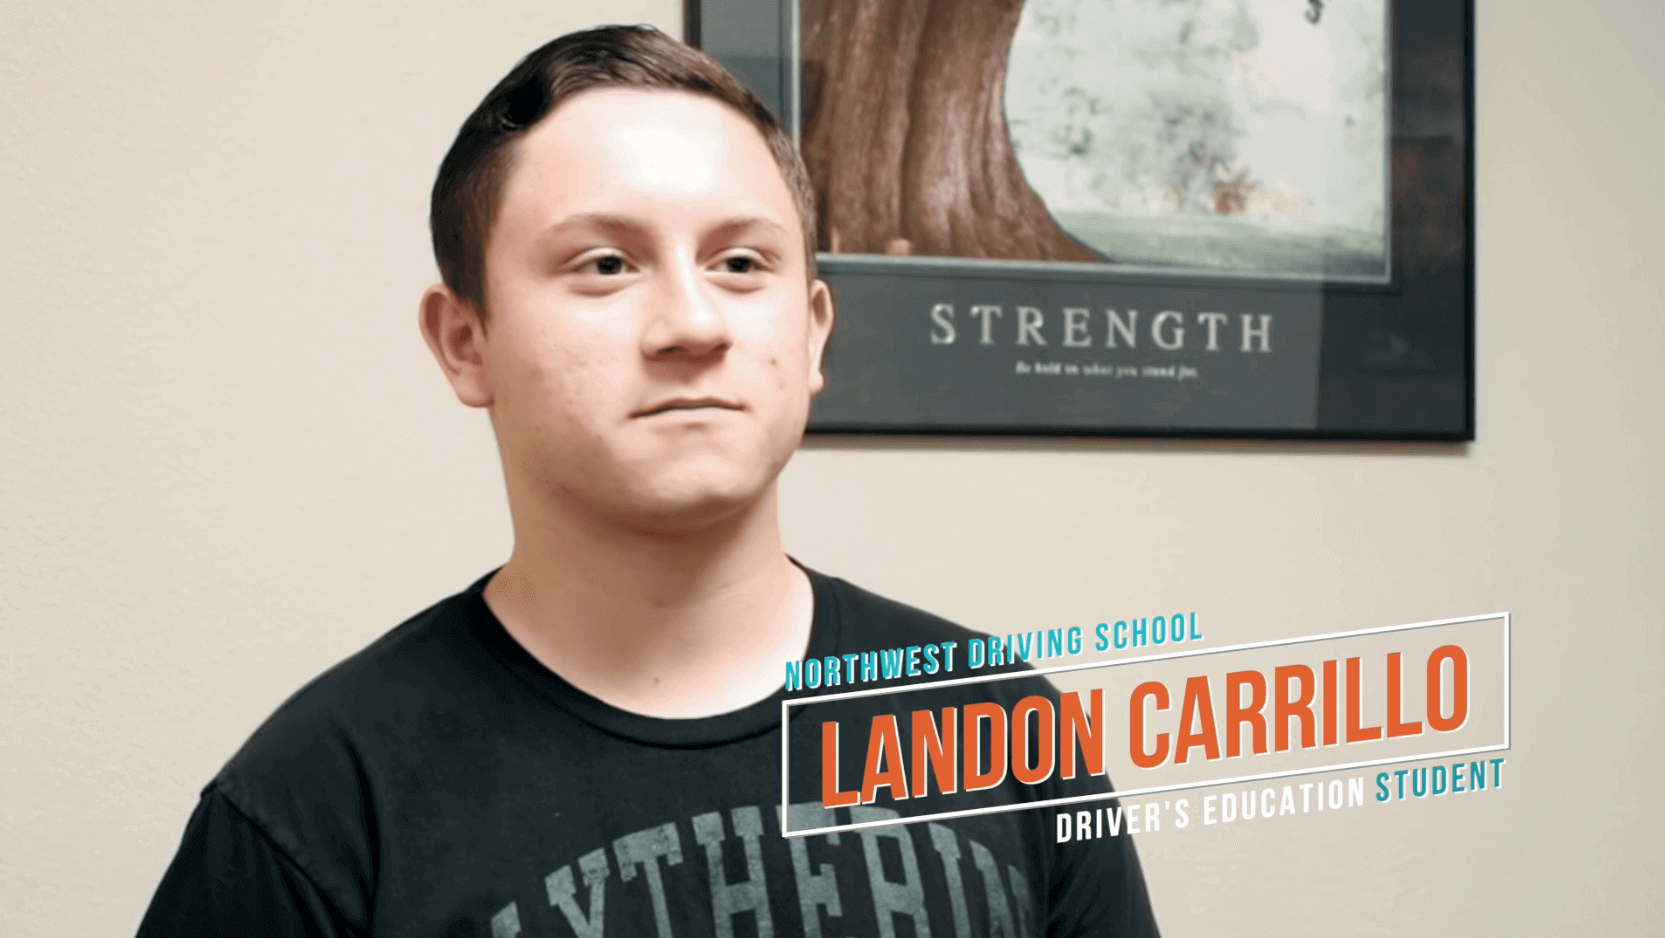 Landon Carrillo Student Testimonial